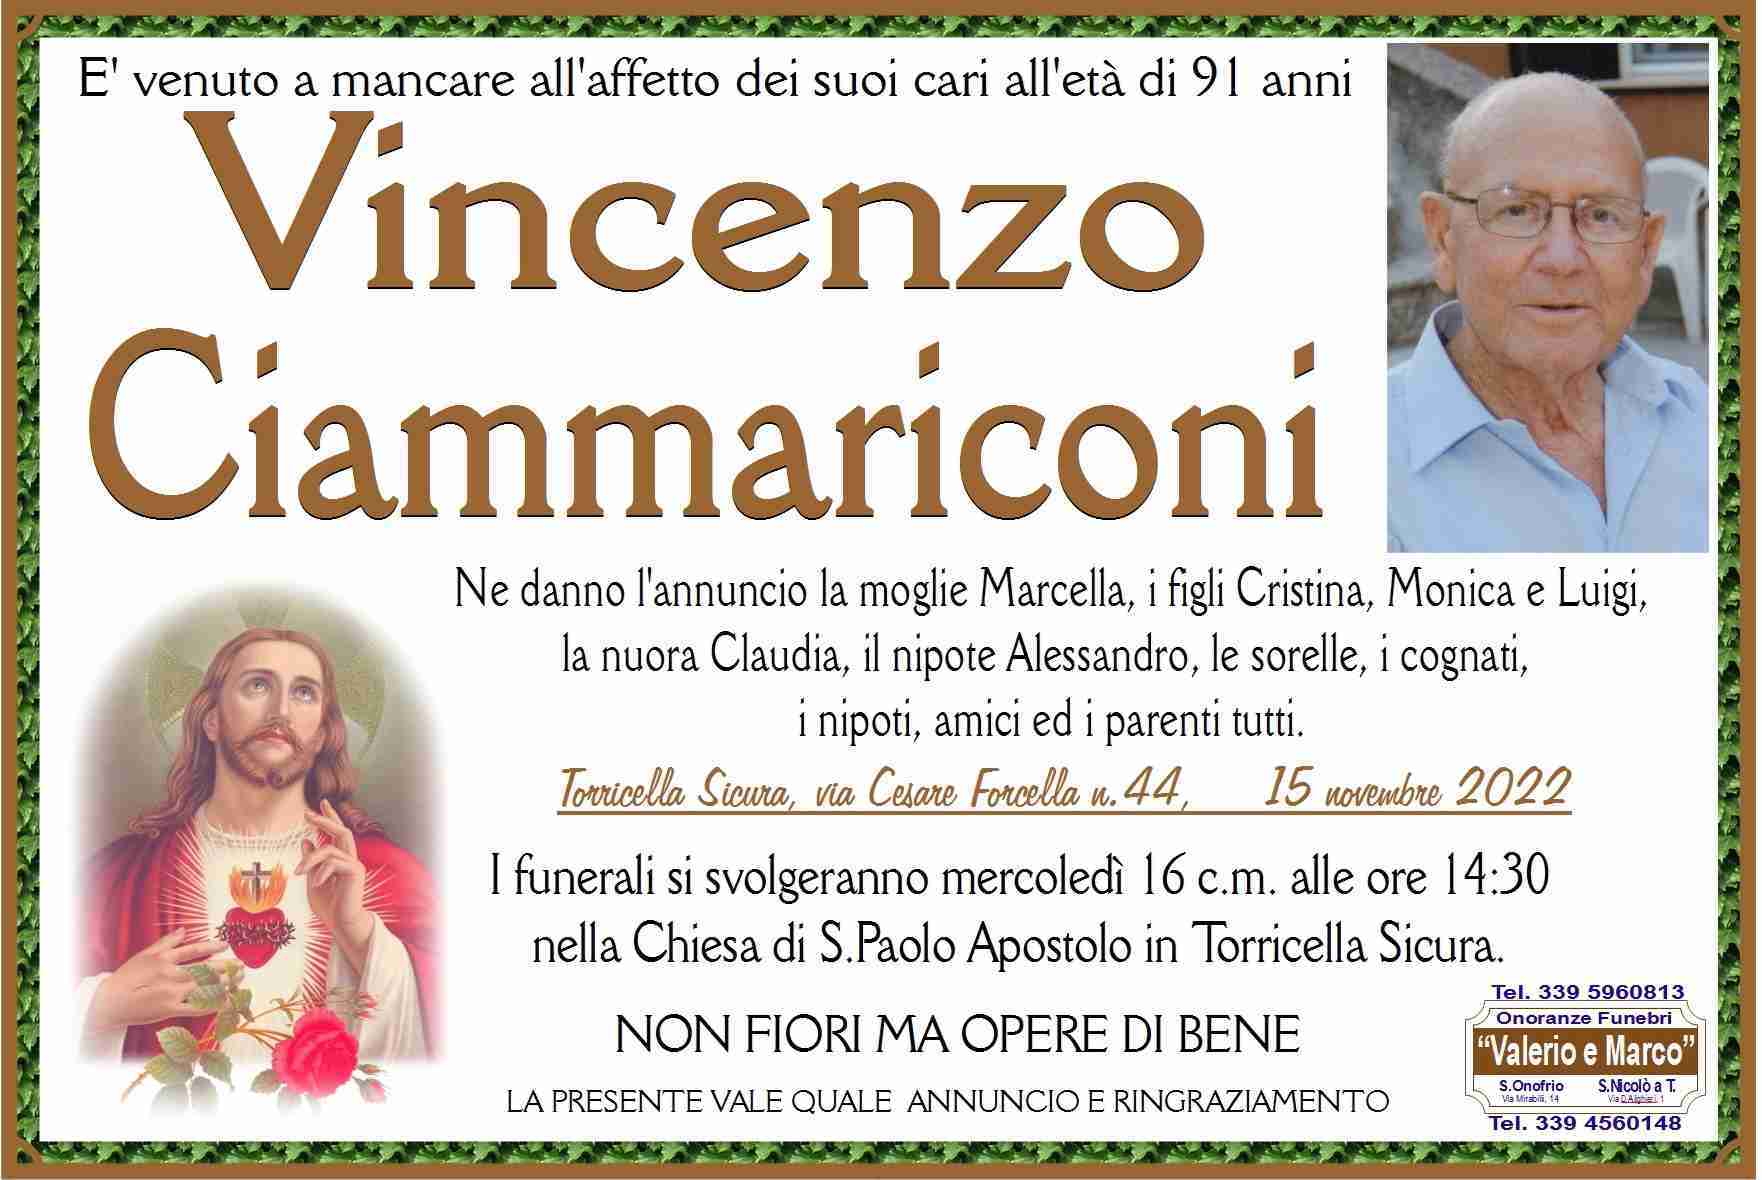 Vincenzo Ciammariconi